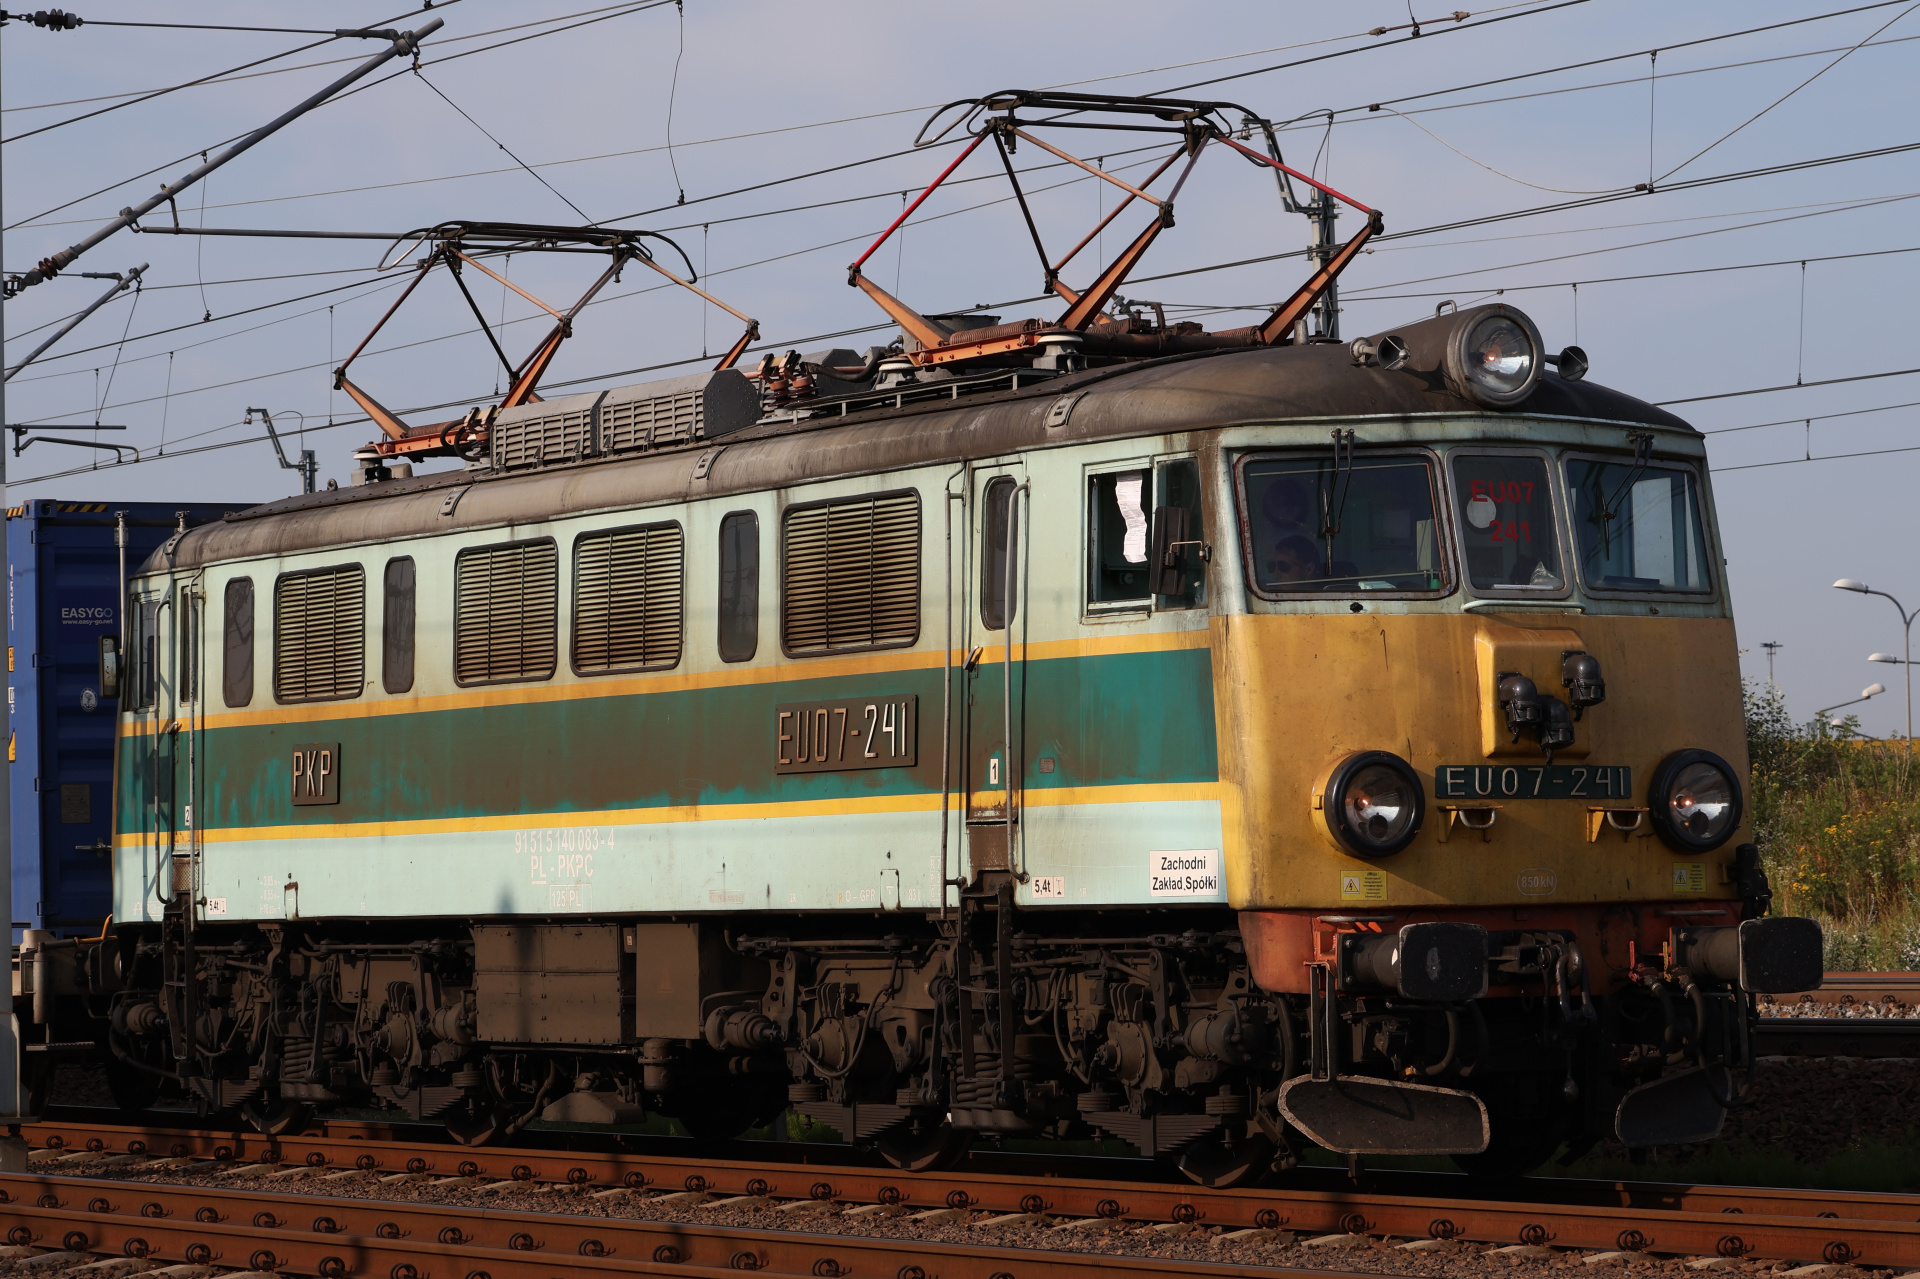 EU07-241 (retro livery) (Vehicles » Trains and Locomotives » Pafawag 4E)